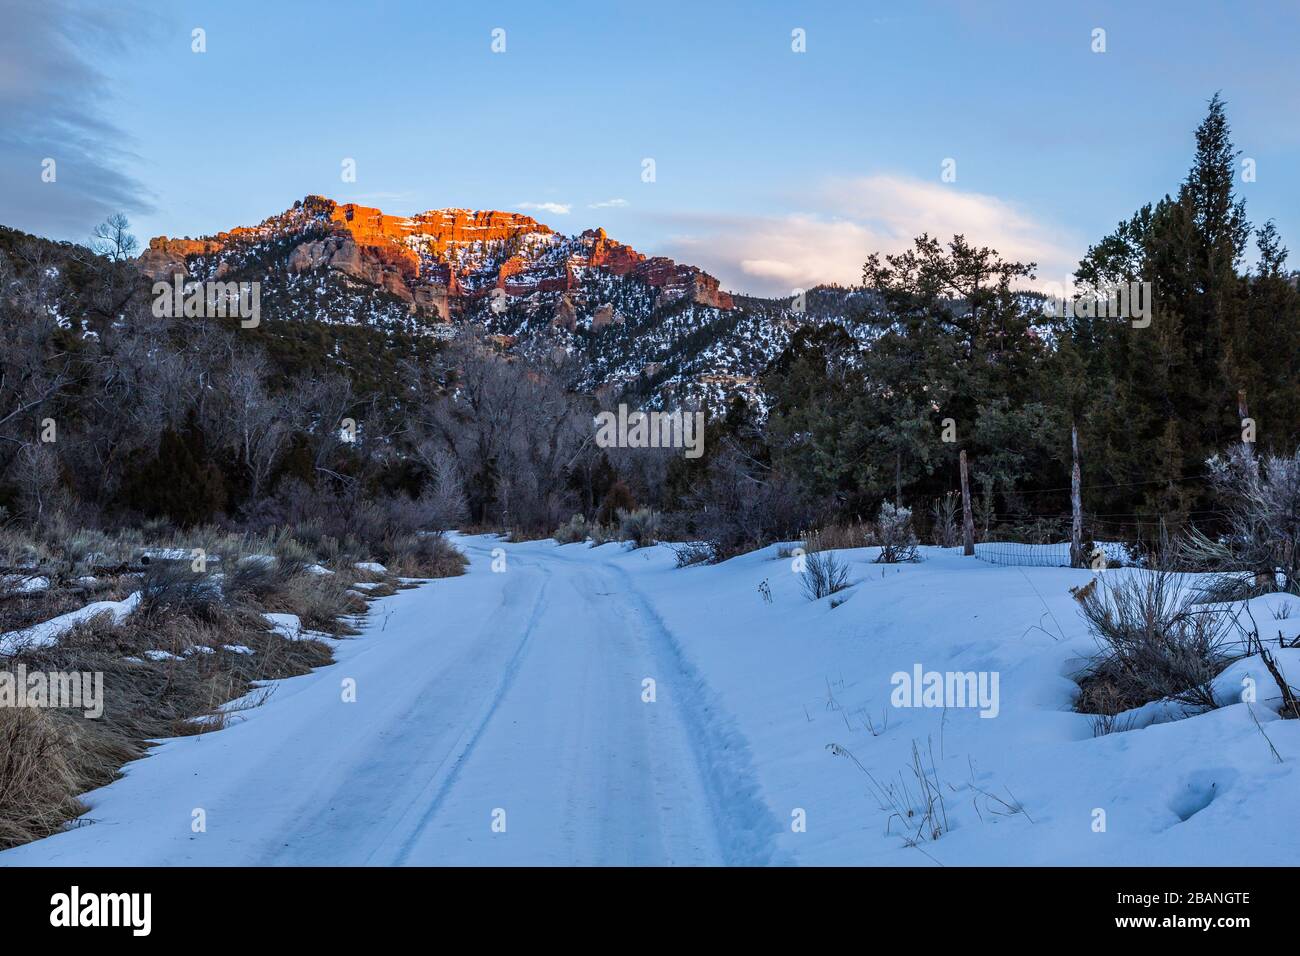 Nel deserto dello Utah meridionale nel mese di febbraio, la neve copre un piccolo sentiero nella natura selvaggia. Sopra, una grande scogliera di arenaria arancione è illuminata dal Foto Stock